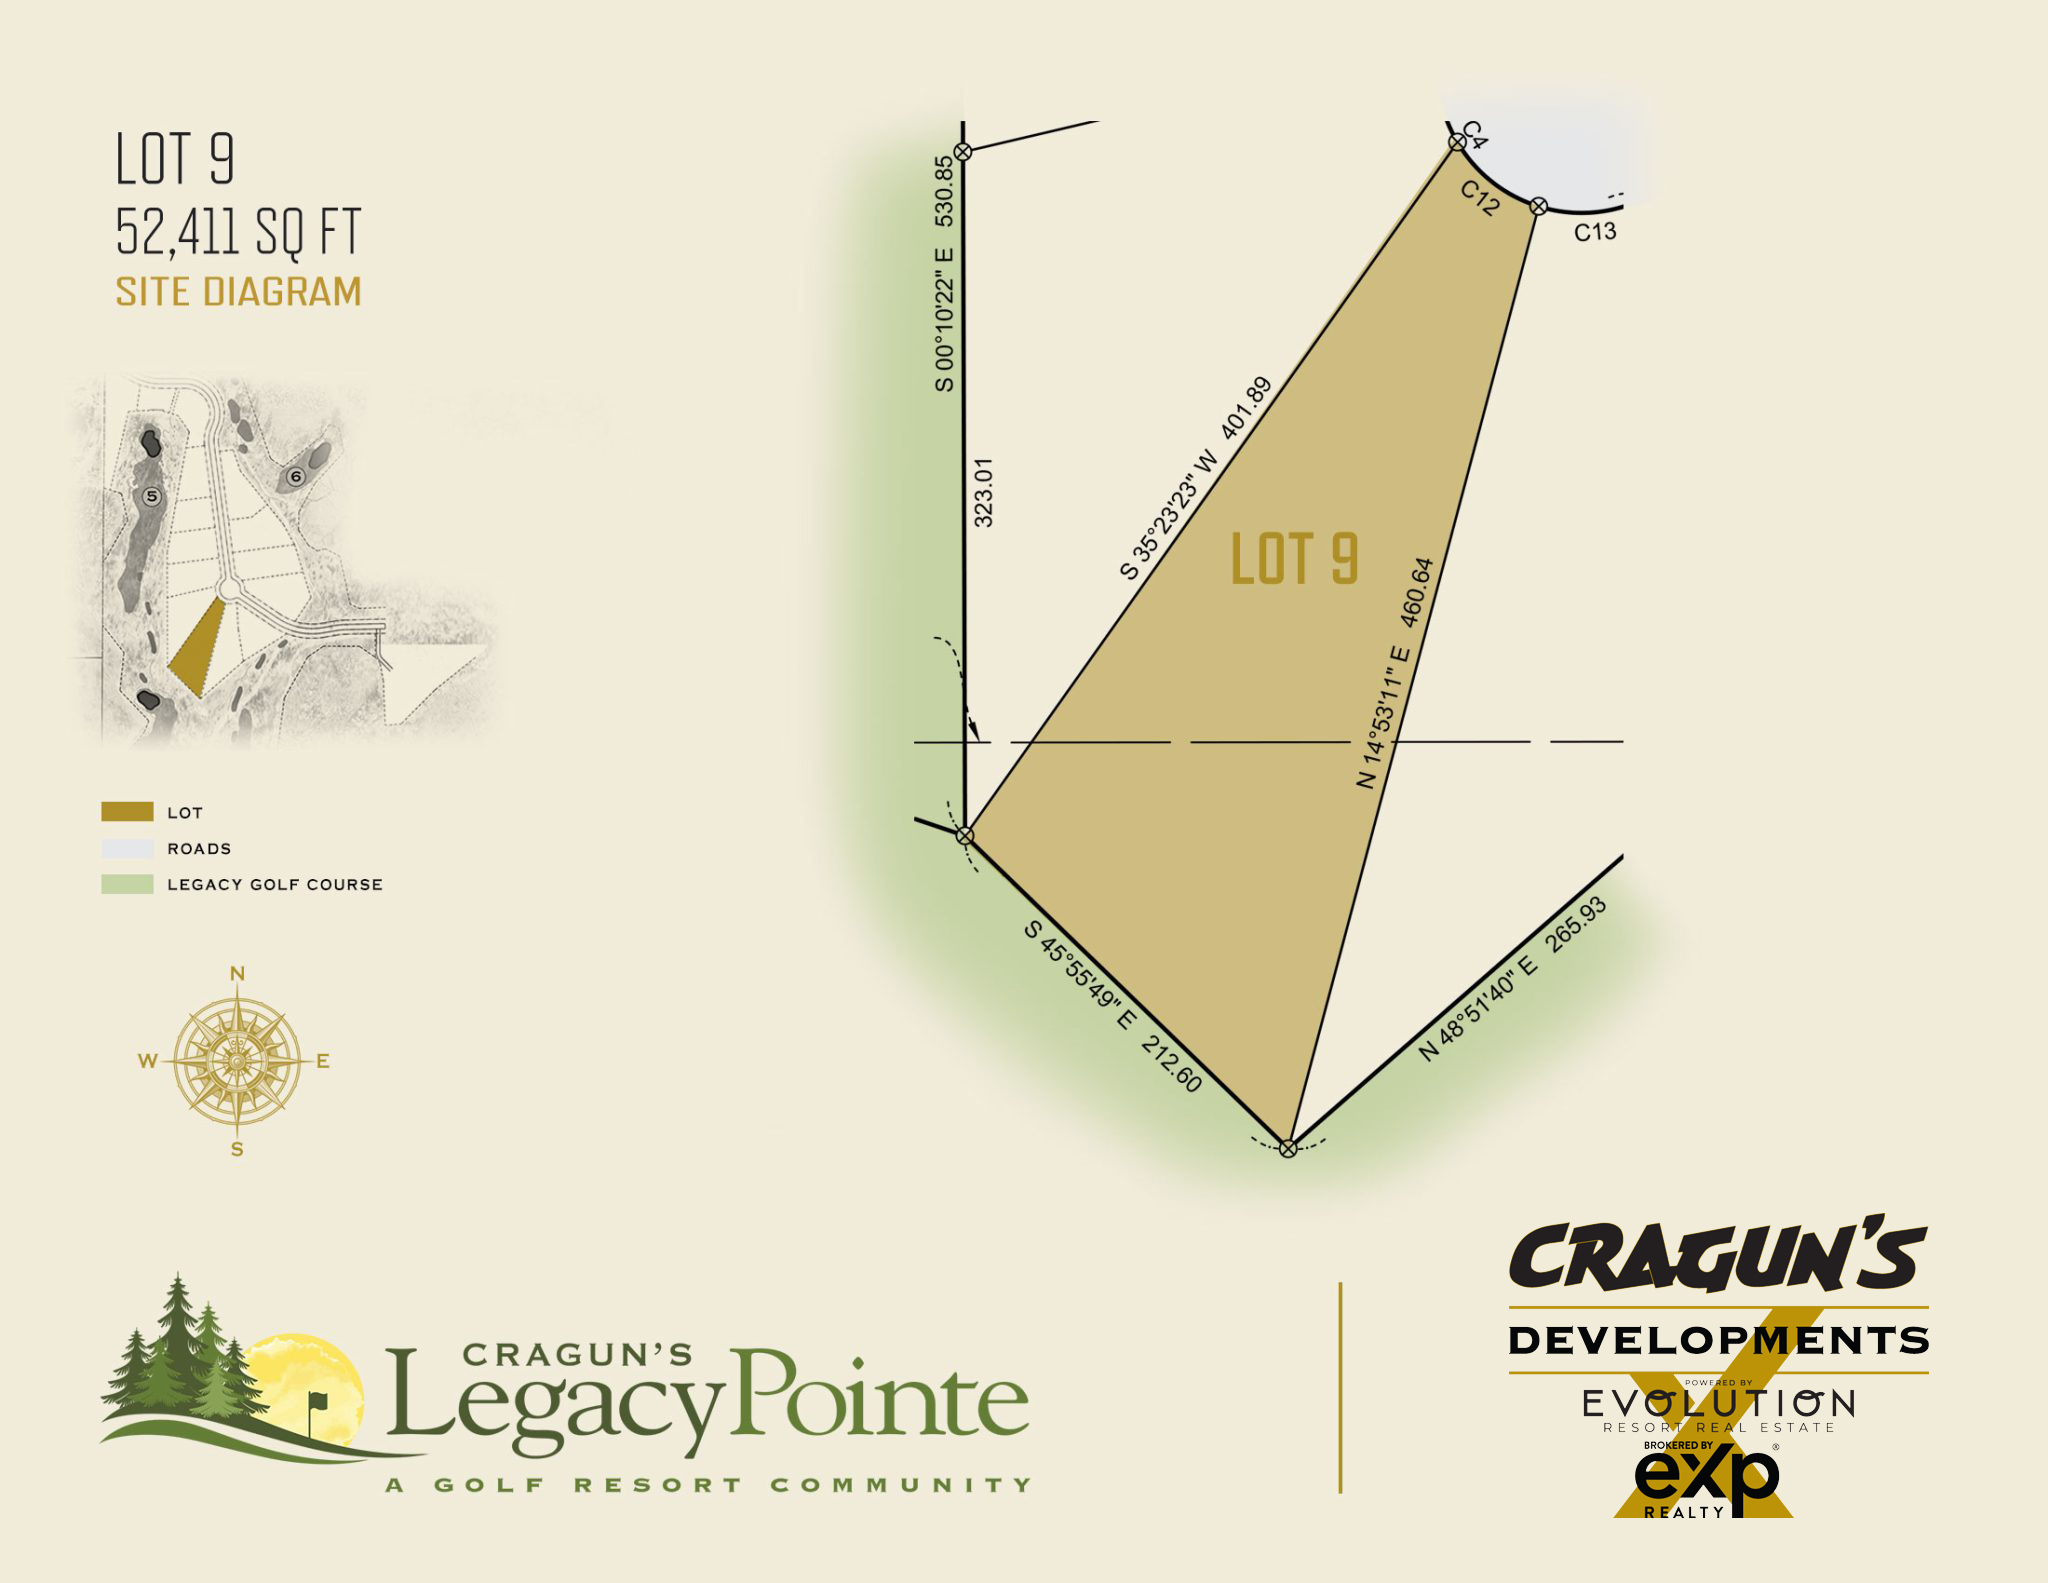 Legacy Pointe Lot 9 at Cragun's Developments in Brainerd, MN